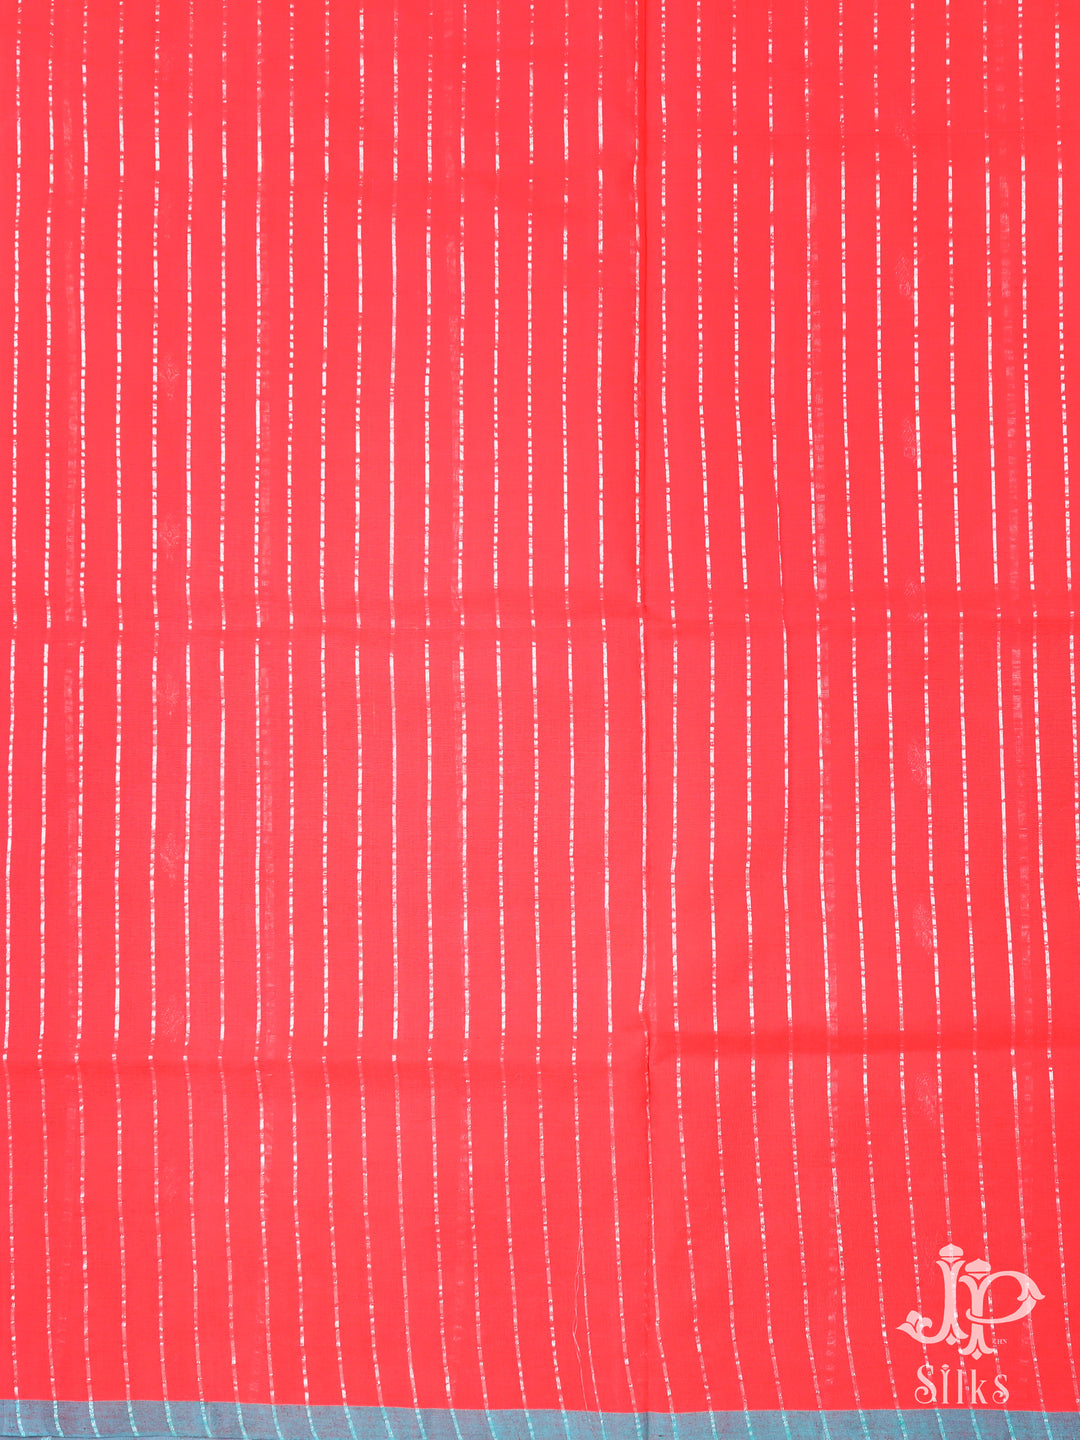 Red Venkatagiri Cotton Saree - D9808 -3